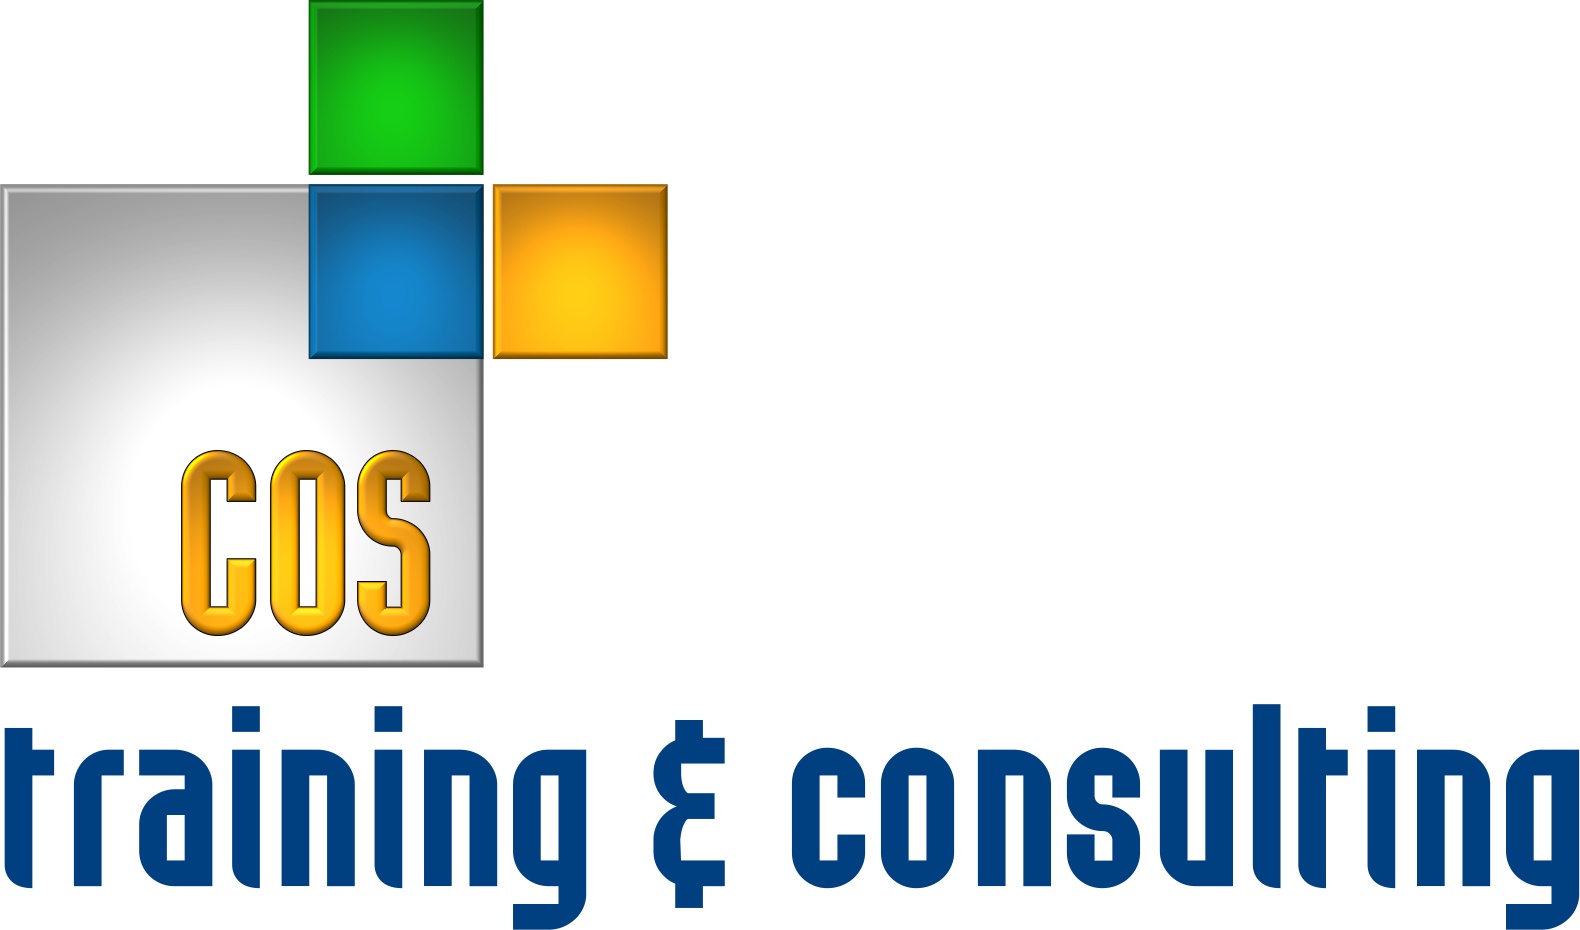 COS Training & Consulting